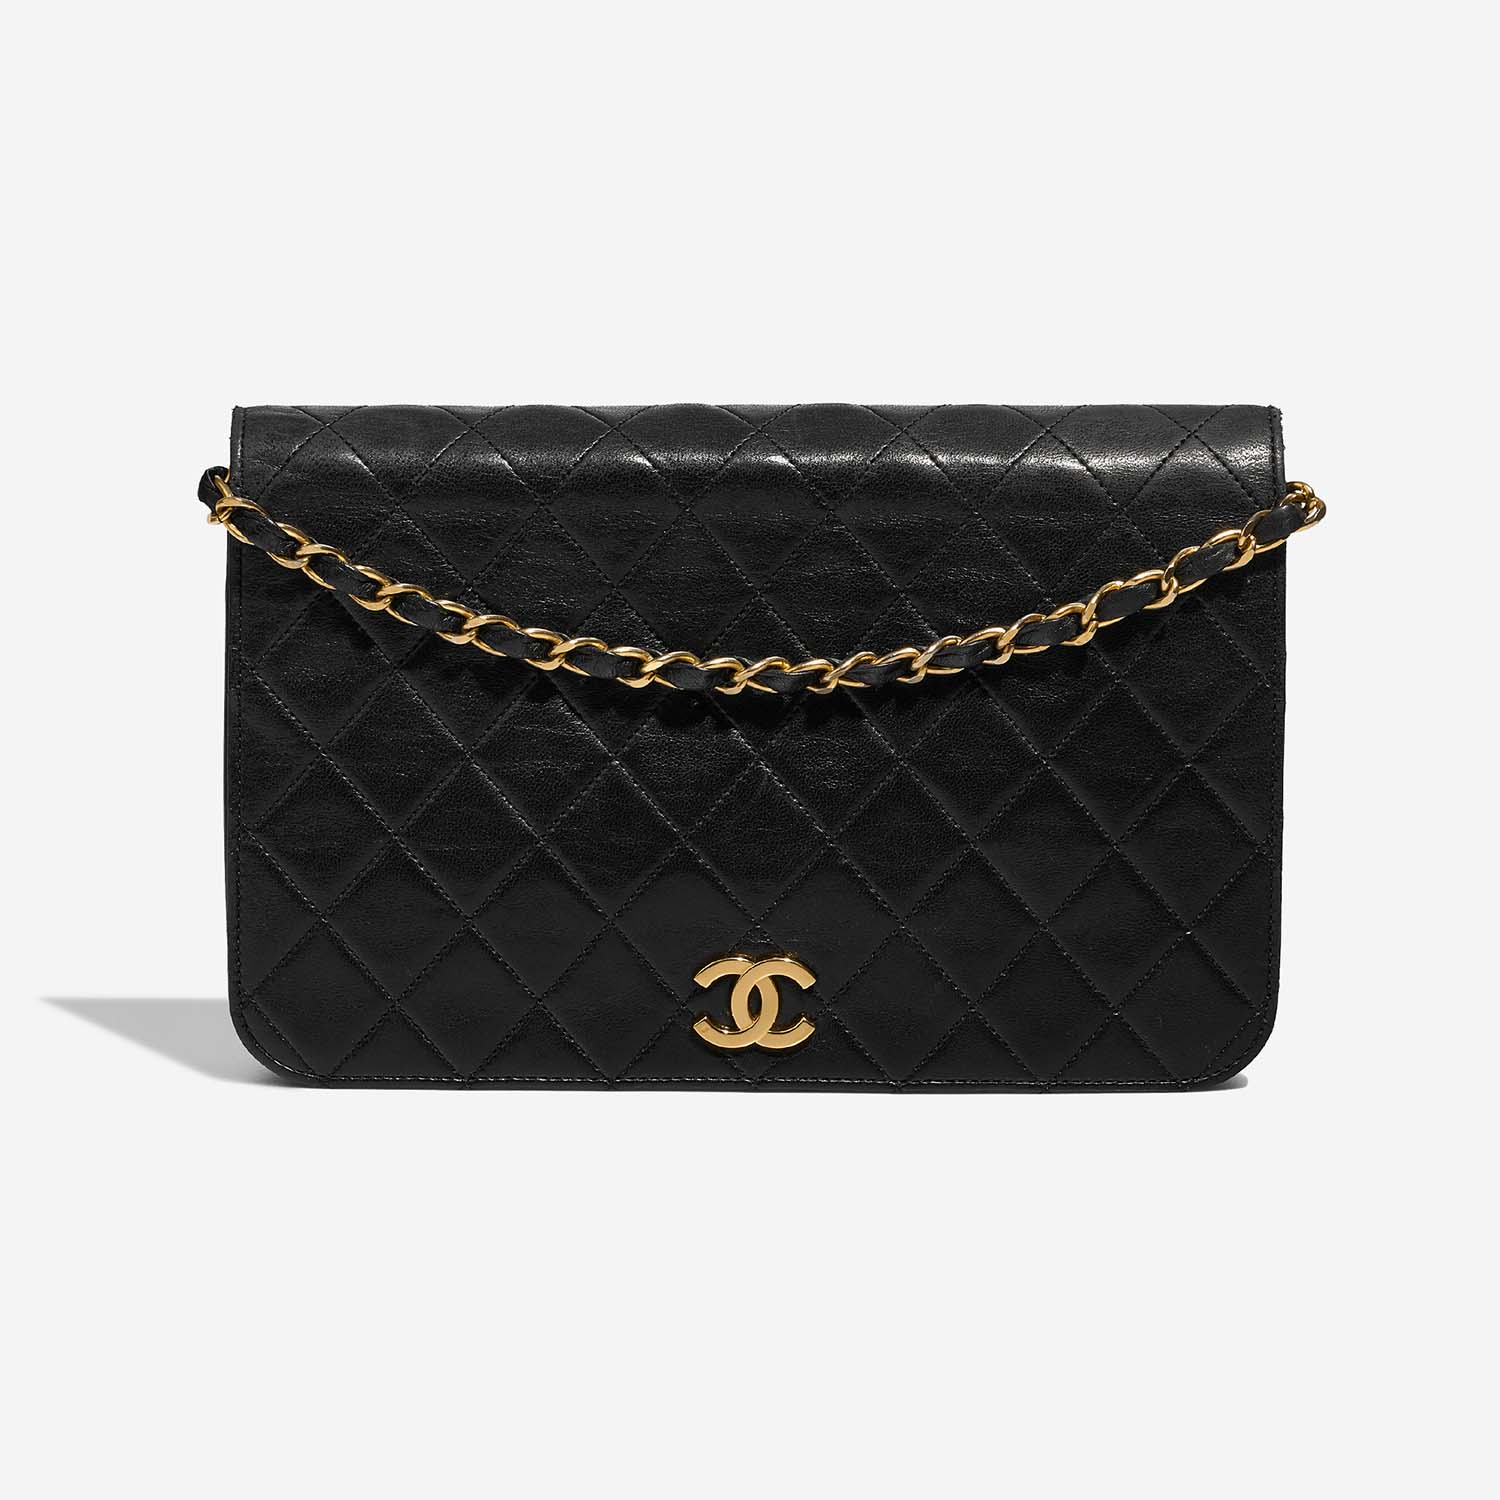 Chanel Timeless Medium Schwarz 2F S | Verkaufen Sie Ihre Designer-Tasche auf Saclab.com